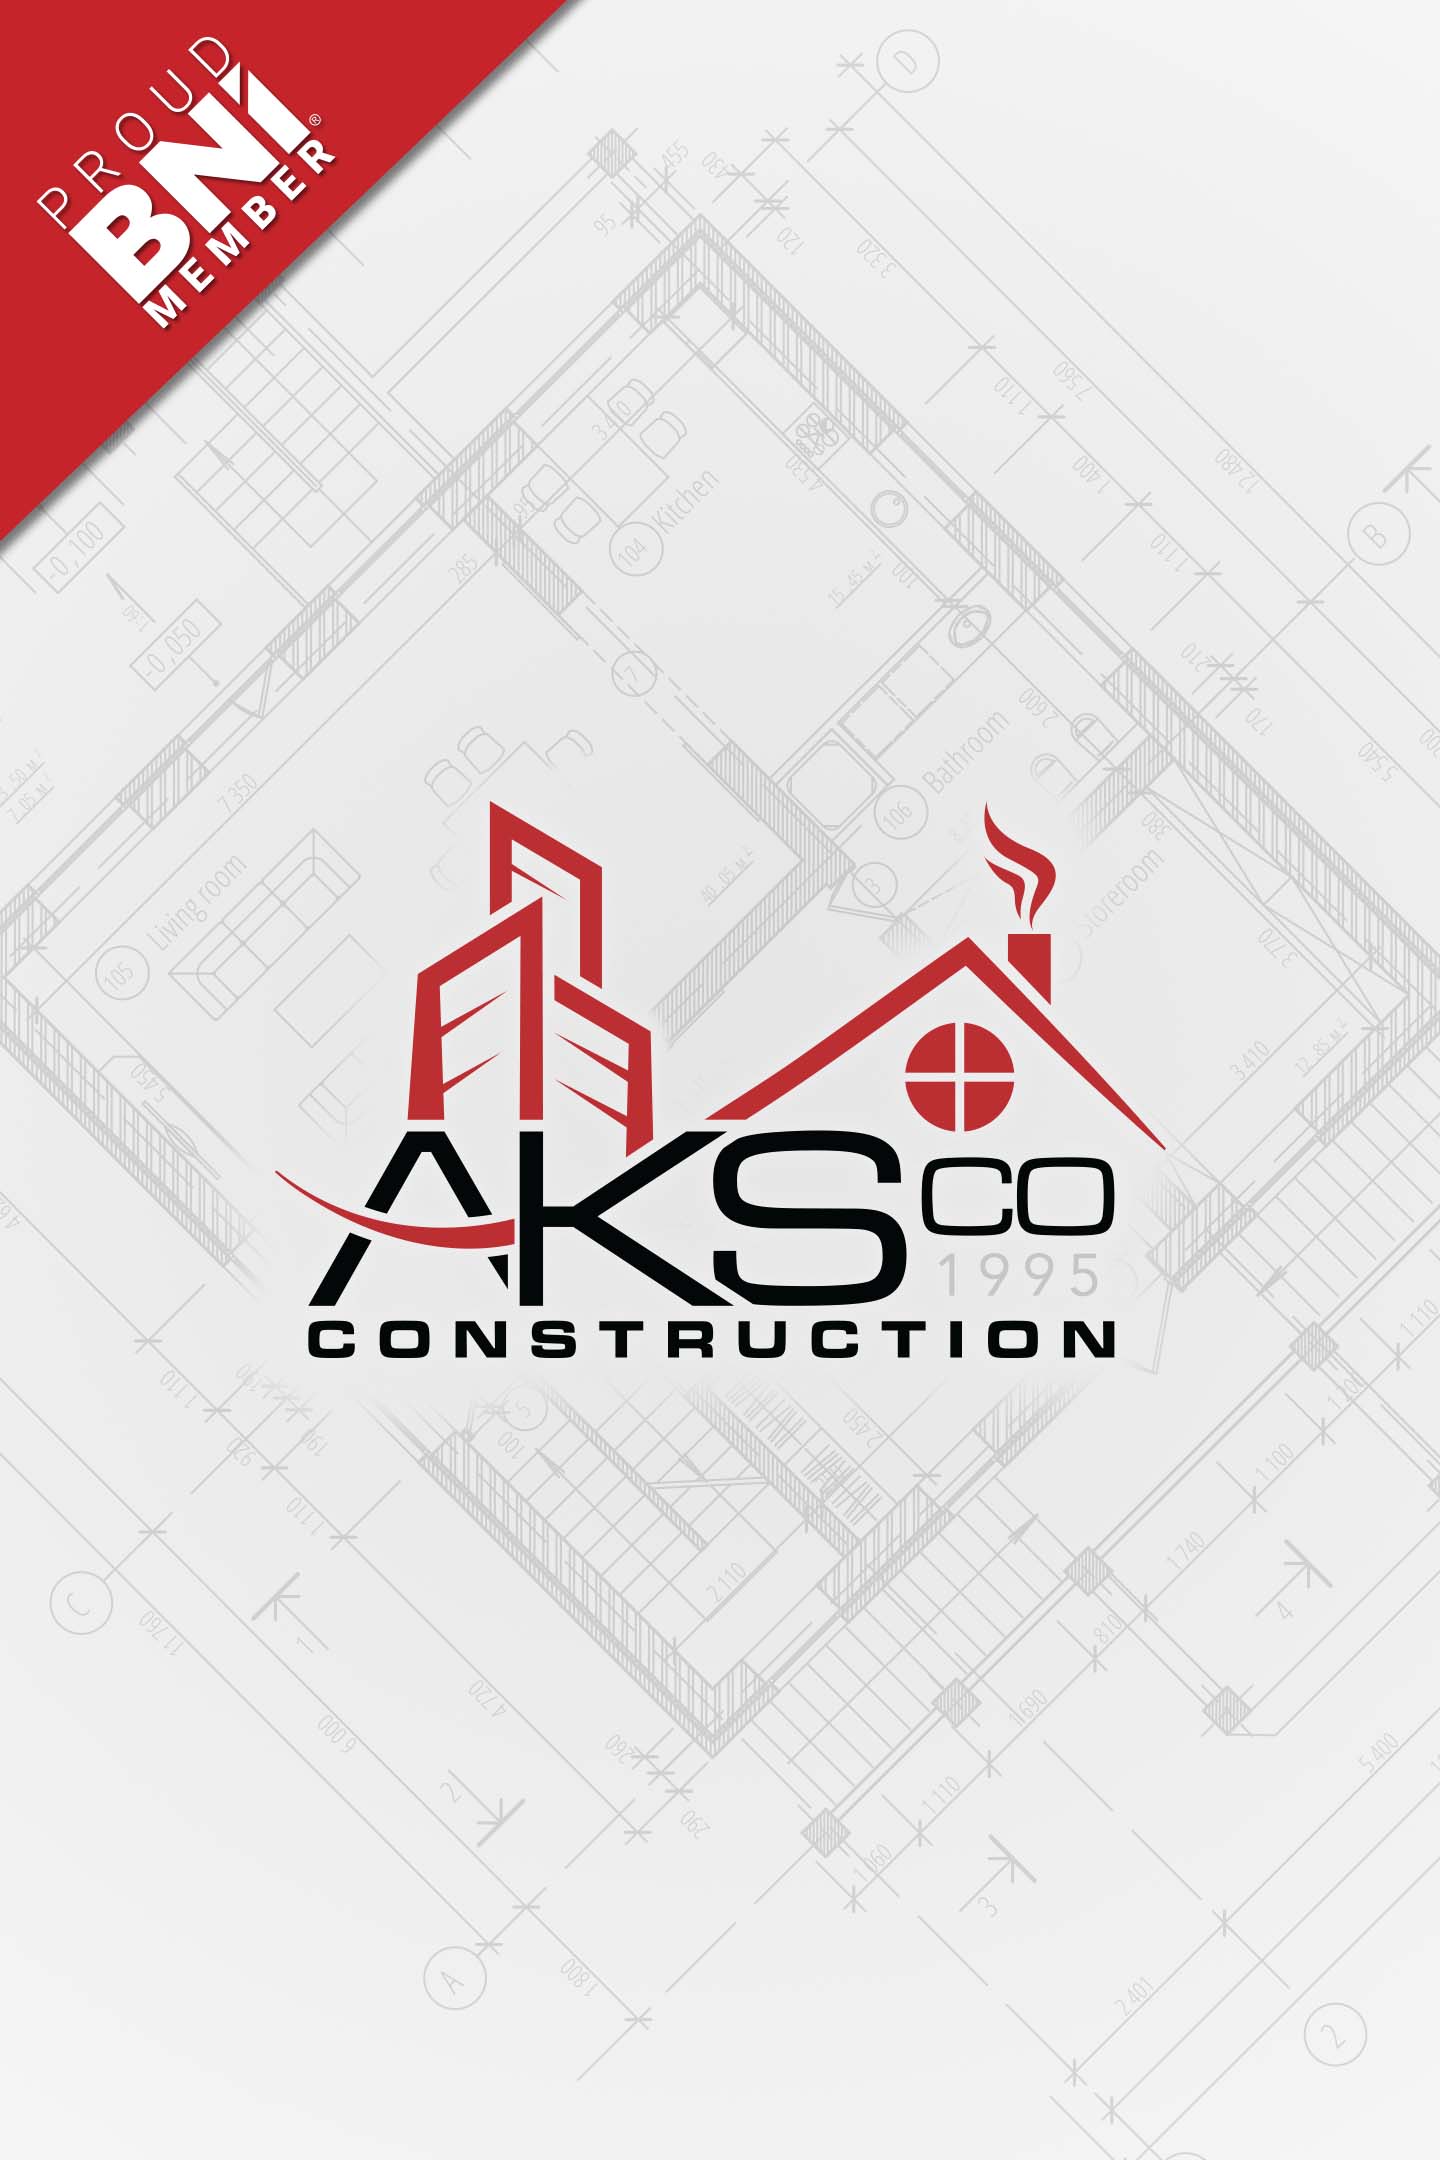 AKSCO Construction - Logo